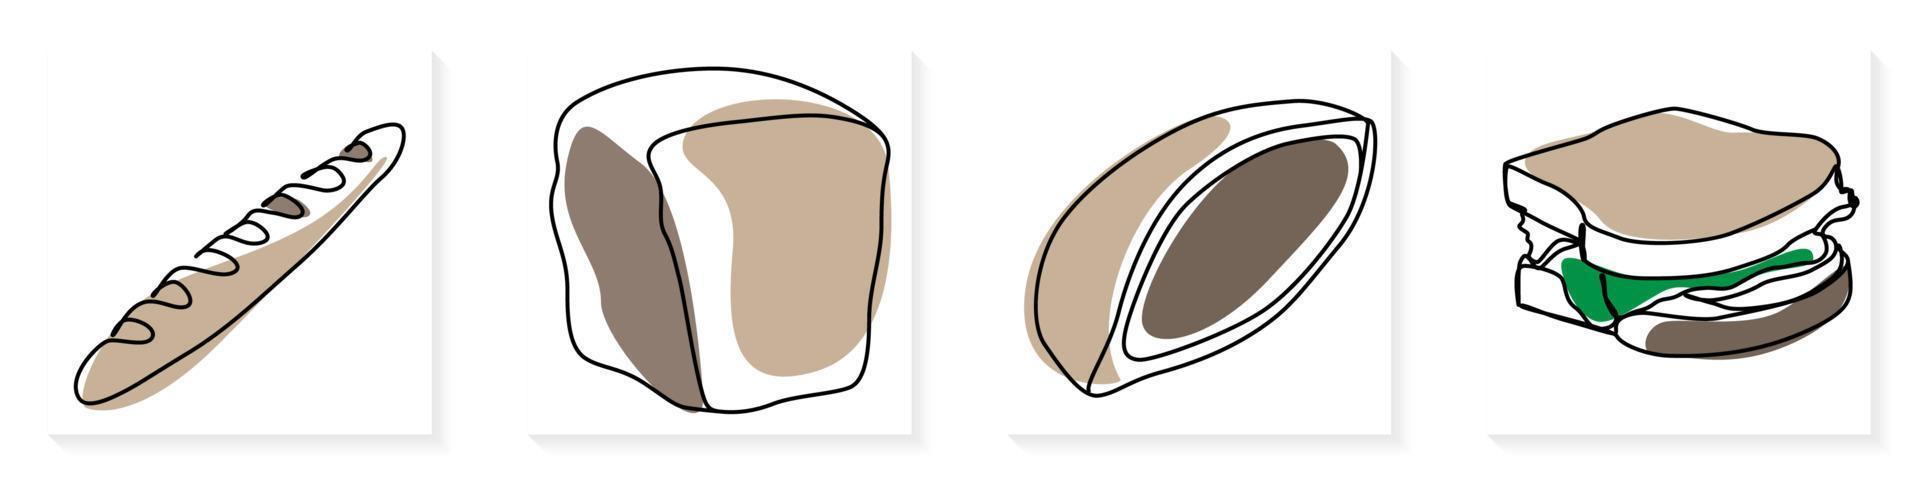 single doorlopend lijn tekening van gestileerde zoet vers bakken bakkerij gebakje in minimaal doorlopend een lijn modern een lijn trek ontwerp vector illustratie voor cafe of voedsel levering onderhoud